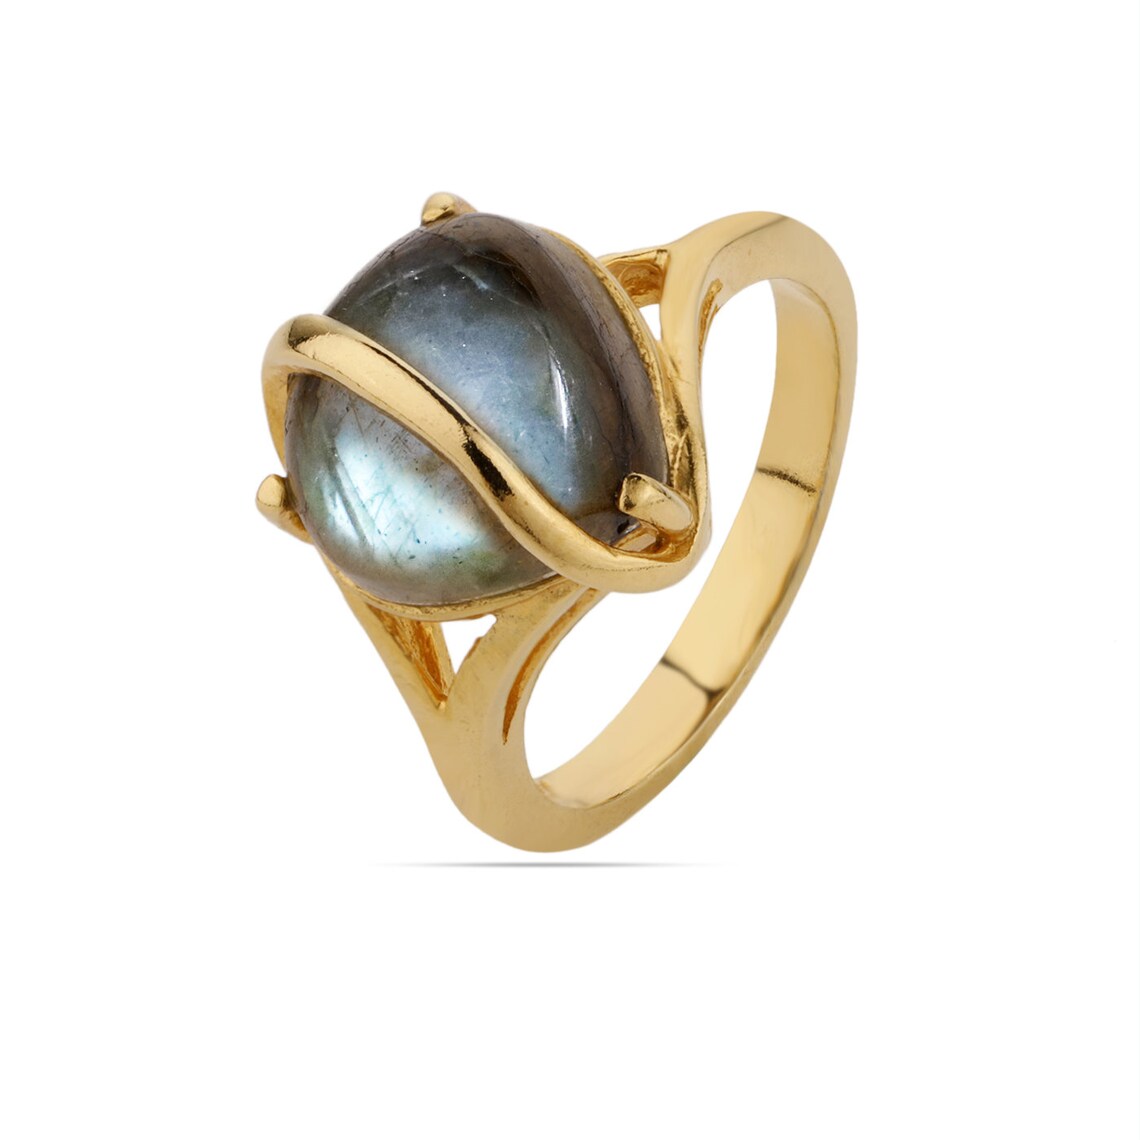 Heart Labradorite Ring, Gold Labradorite Ring, Labradorite Gemstone Ring, Solitaire Ring, Labradorite Prong set Ring, Handmade Ring